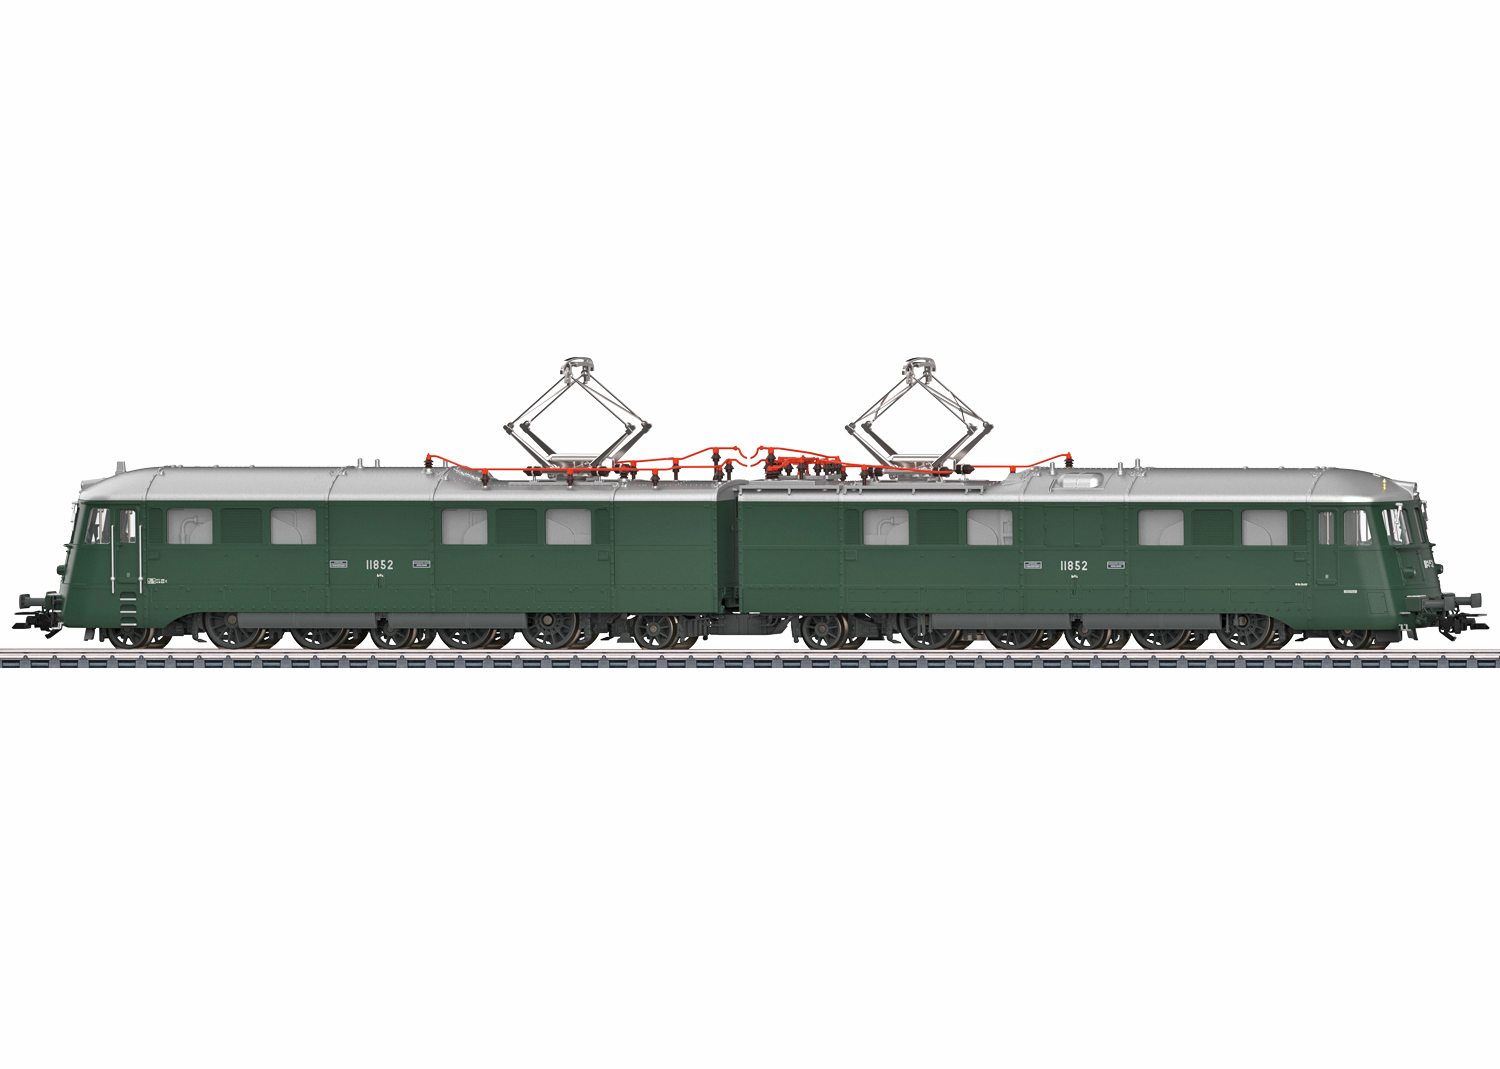 Märklin 38590 SBB E-Lokomotive Ae 8/14 11852 Landilok 